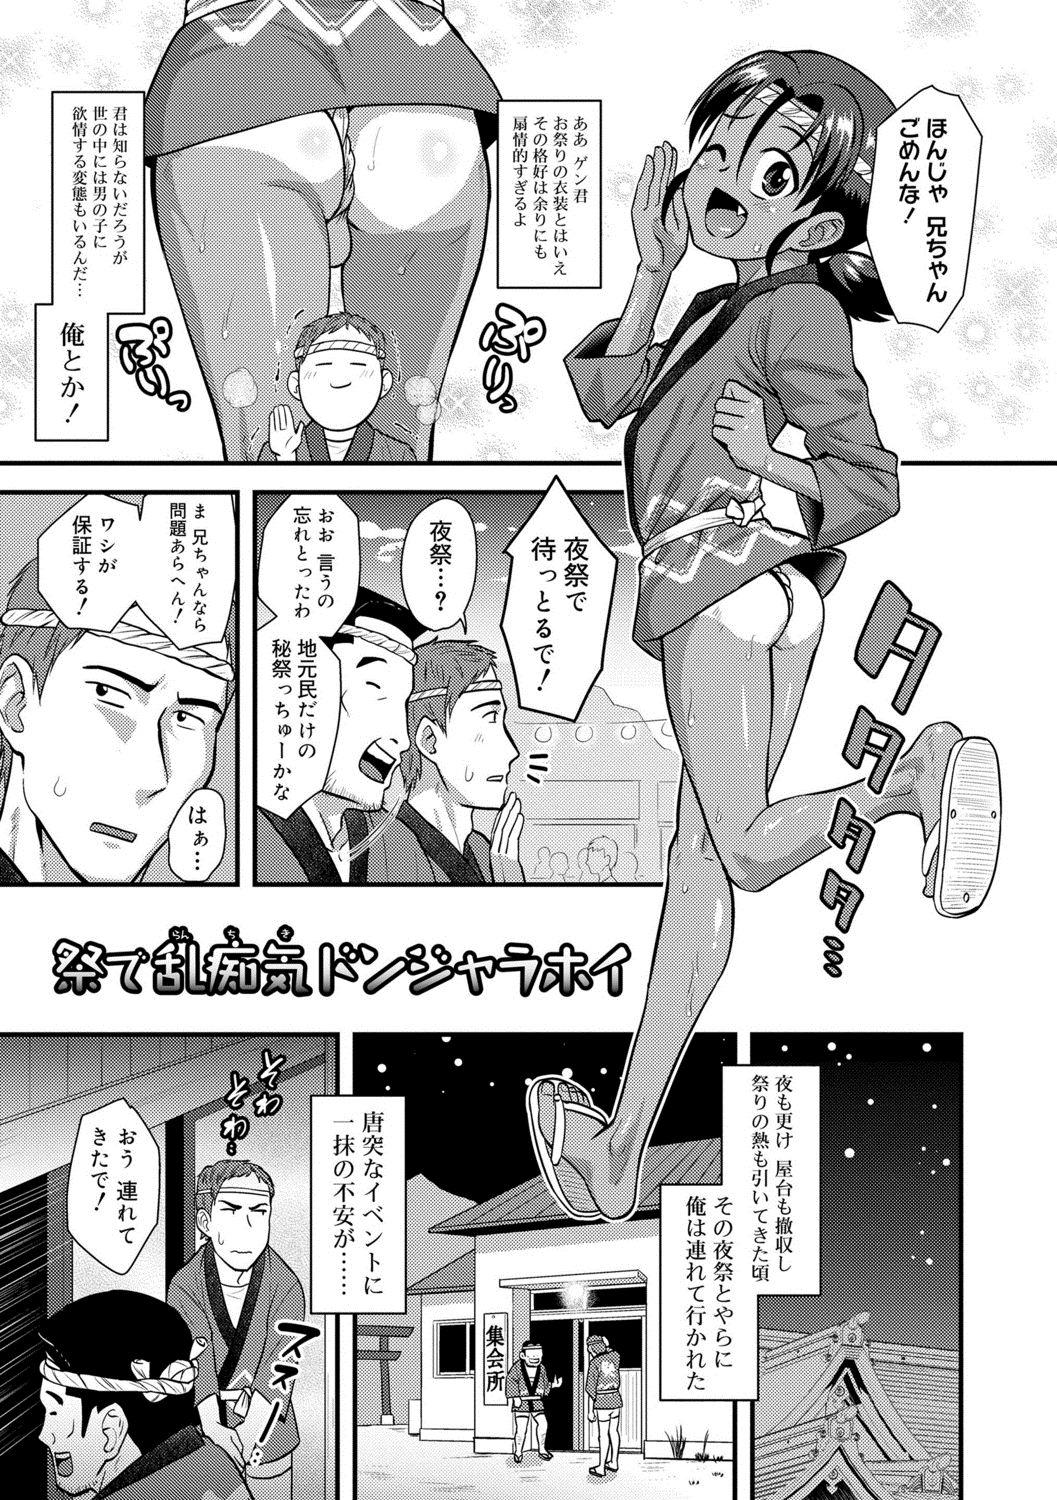 Furry Kappatsu Shounen Kanshasai + DLsite Gentei Tokuten Flogging - Page 7